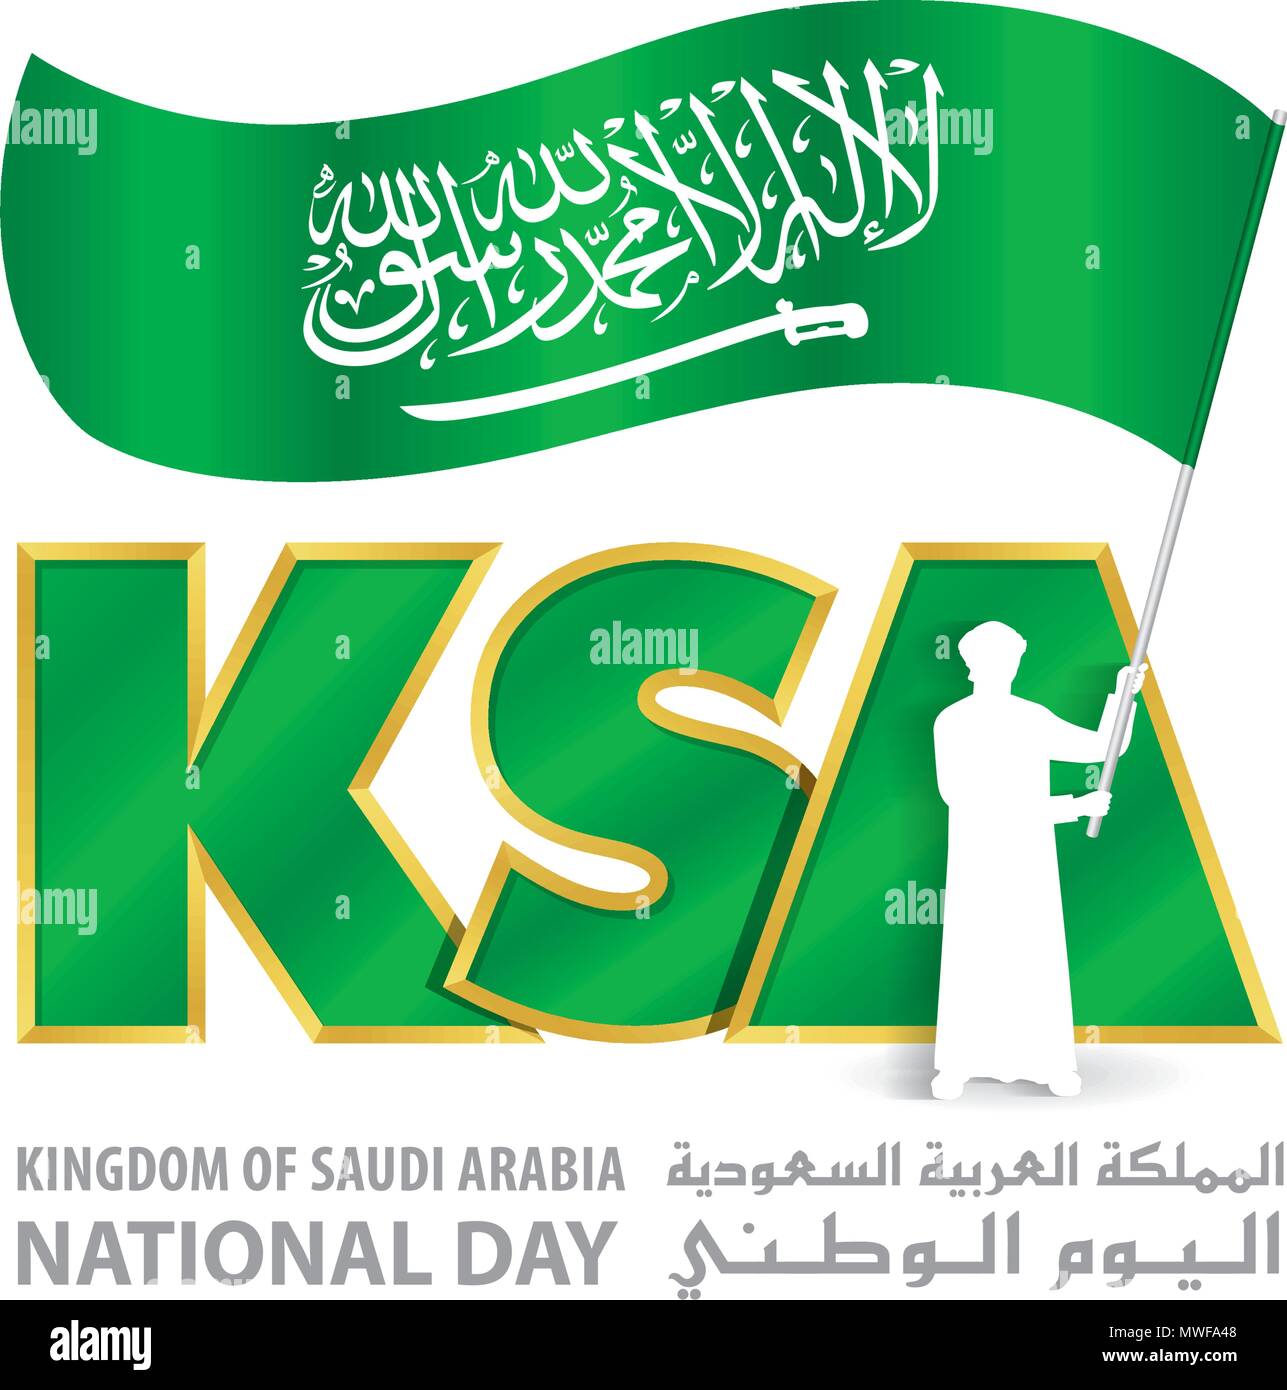 Logo de la Journée nationale de l'ARABIE SAOUDITE L'Arabie avec les jeunes Indicateur de mise en attente, une inscription en anglais et arabe "Royaume d'Arabie saoudite Journée Nationale', Vector Illustration Illustration de Vecteur